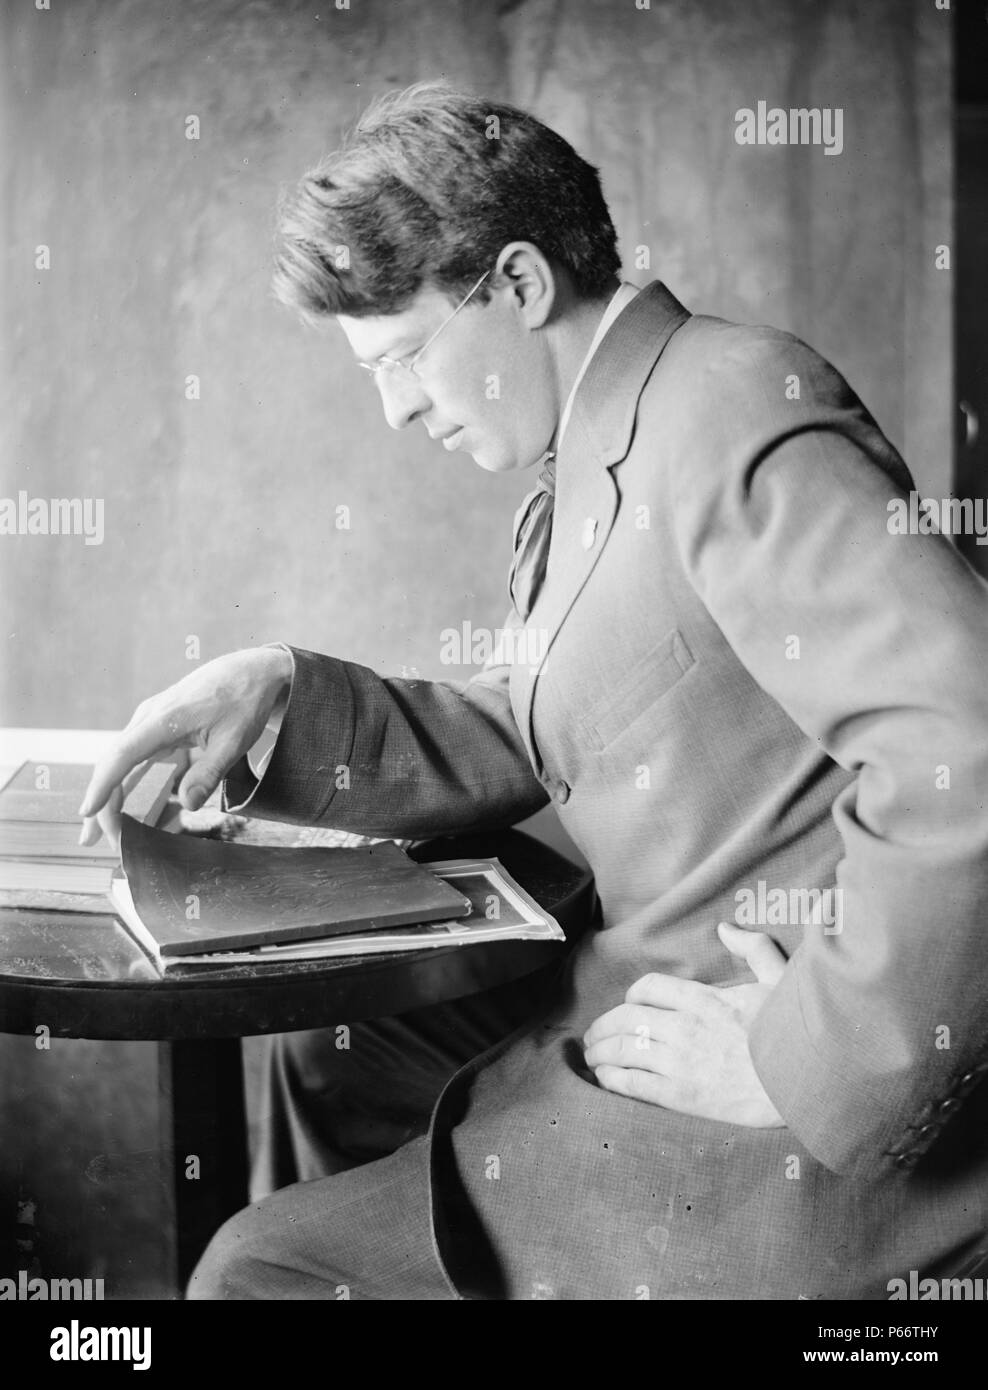 Clarence White Sr par le photographe Gertrude Käsebier, 1852-1934. Clarence White, Sr. dans un tailleur, assis, tourné à gauche, sur le point d'ouvrir un livre. Daté entre 1897 et 1910 Banque D'Images